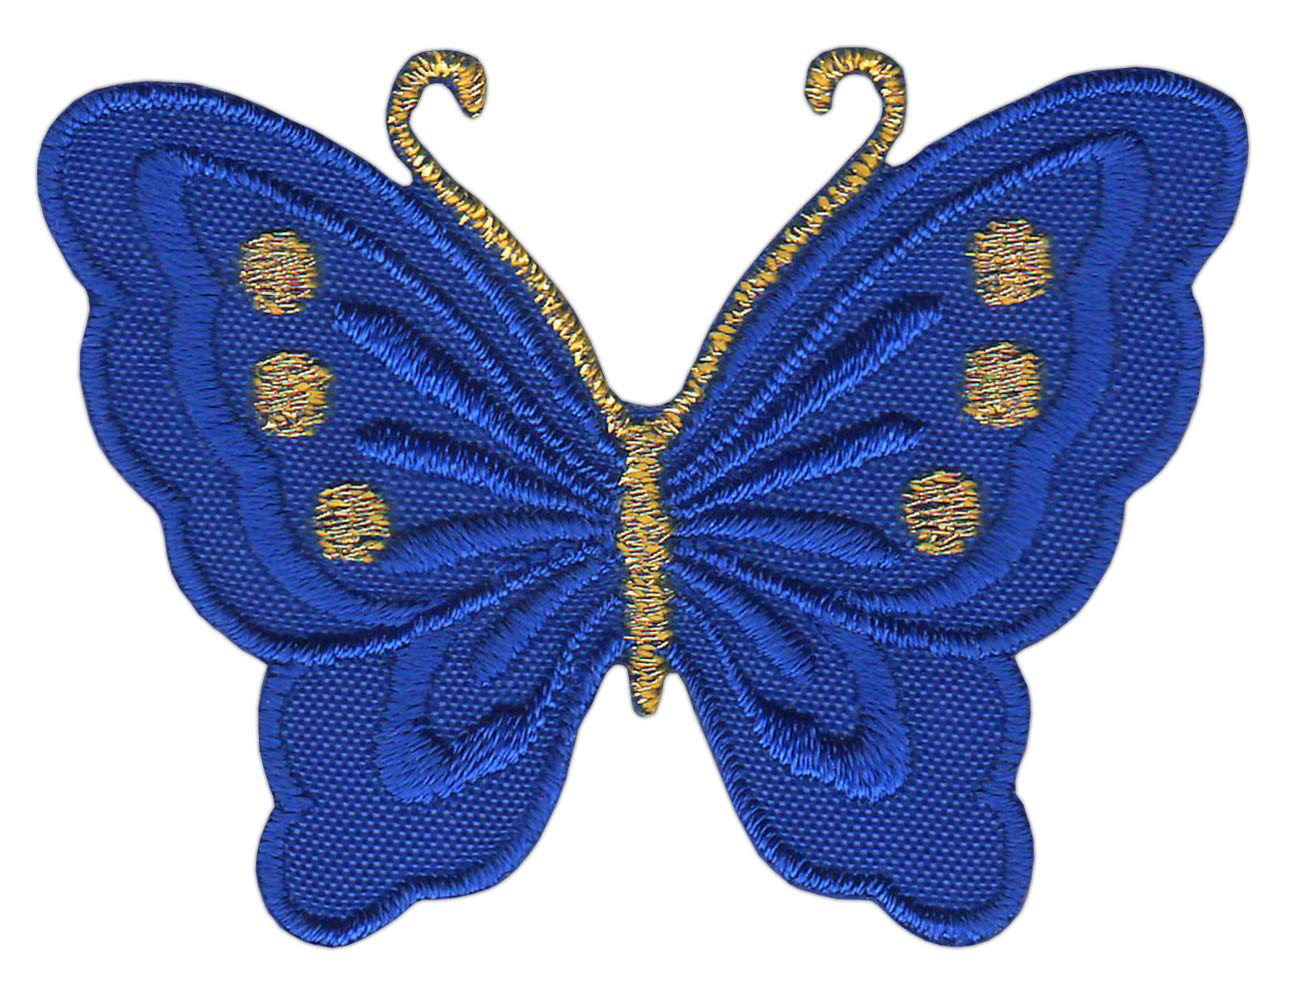 Schmetterling klein Dunkelblau Blau Aufnäher Bügelbild Patch Größe 5,2 x 3,7 cm von Bestellmich / Aufnäher